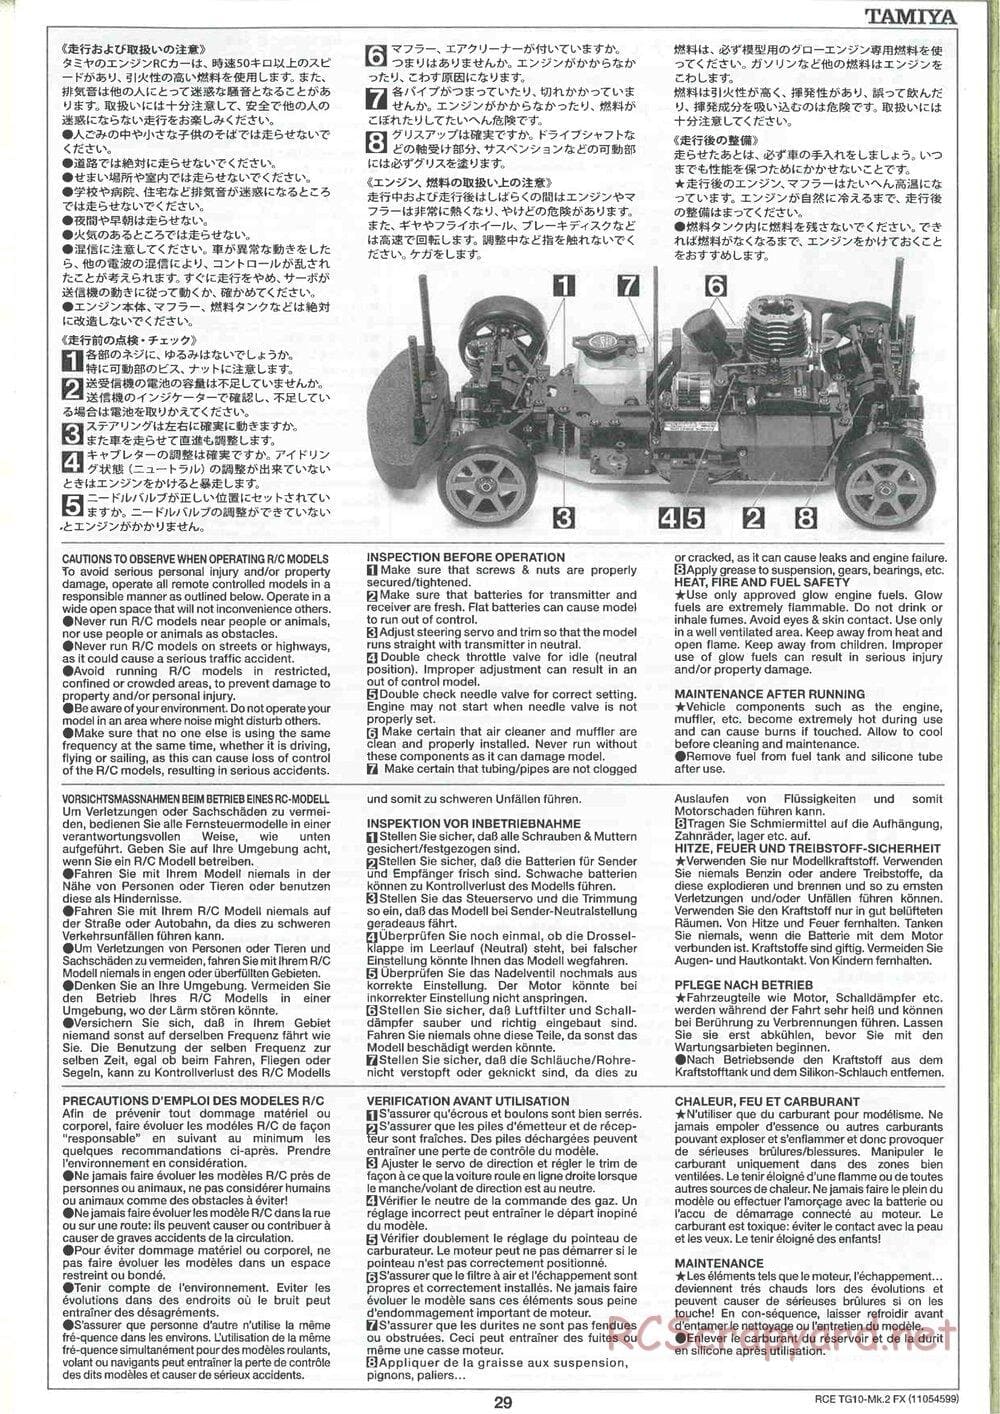 Tamiya - TG10 Mk.2 FX Chassis - Manual - Page 29